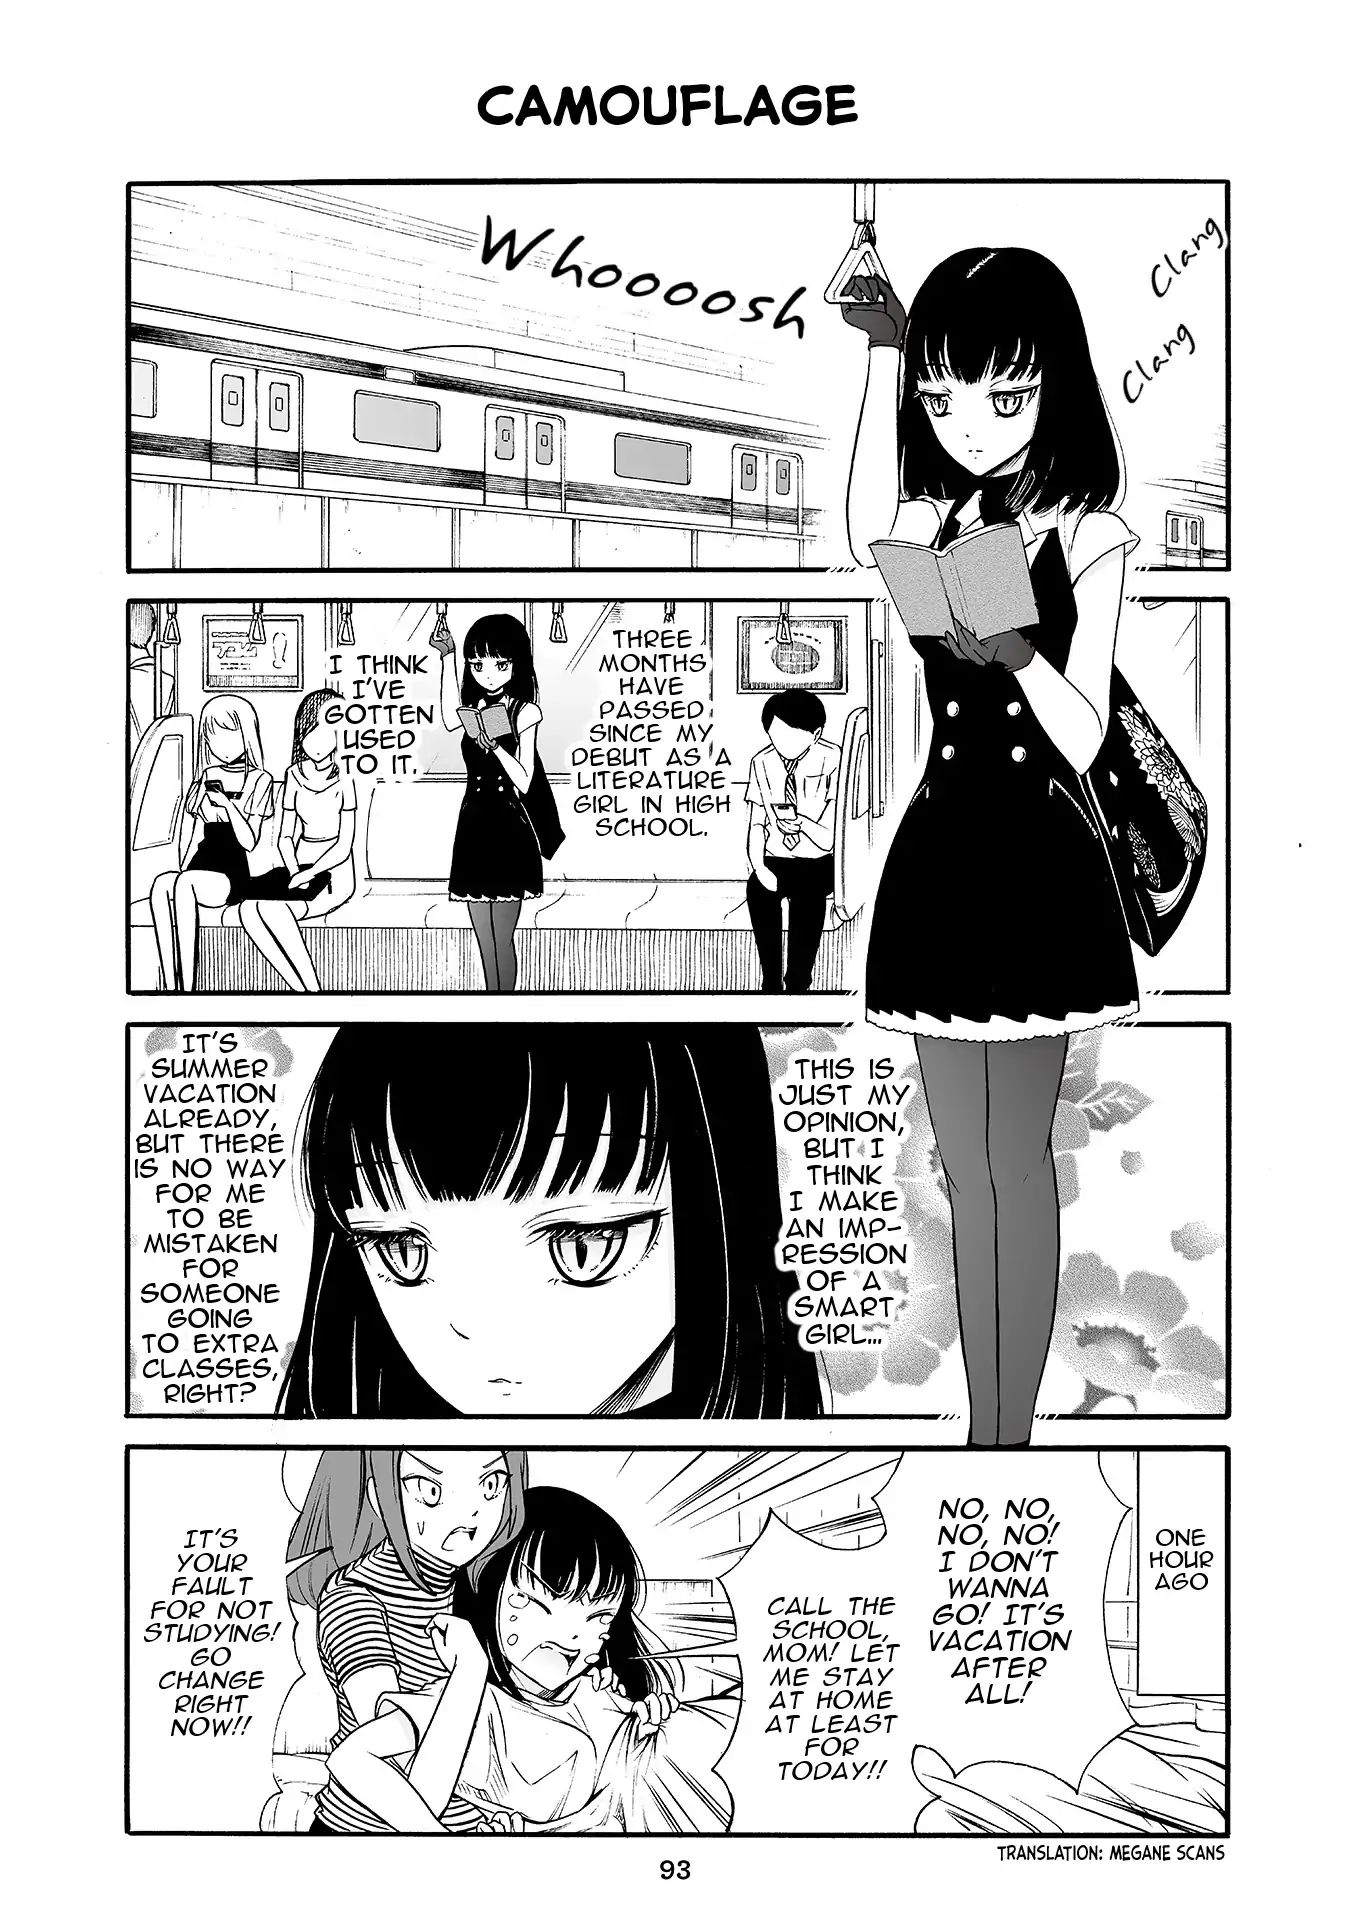 Kuzu to Megane to Bungakushojo (Nise) Vol.2 Chapter 174: Camouflage